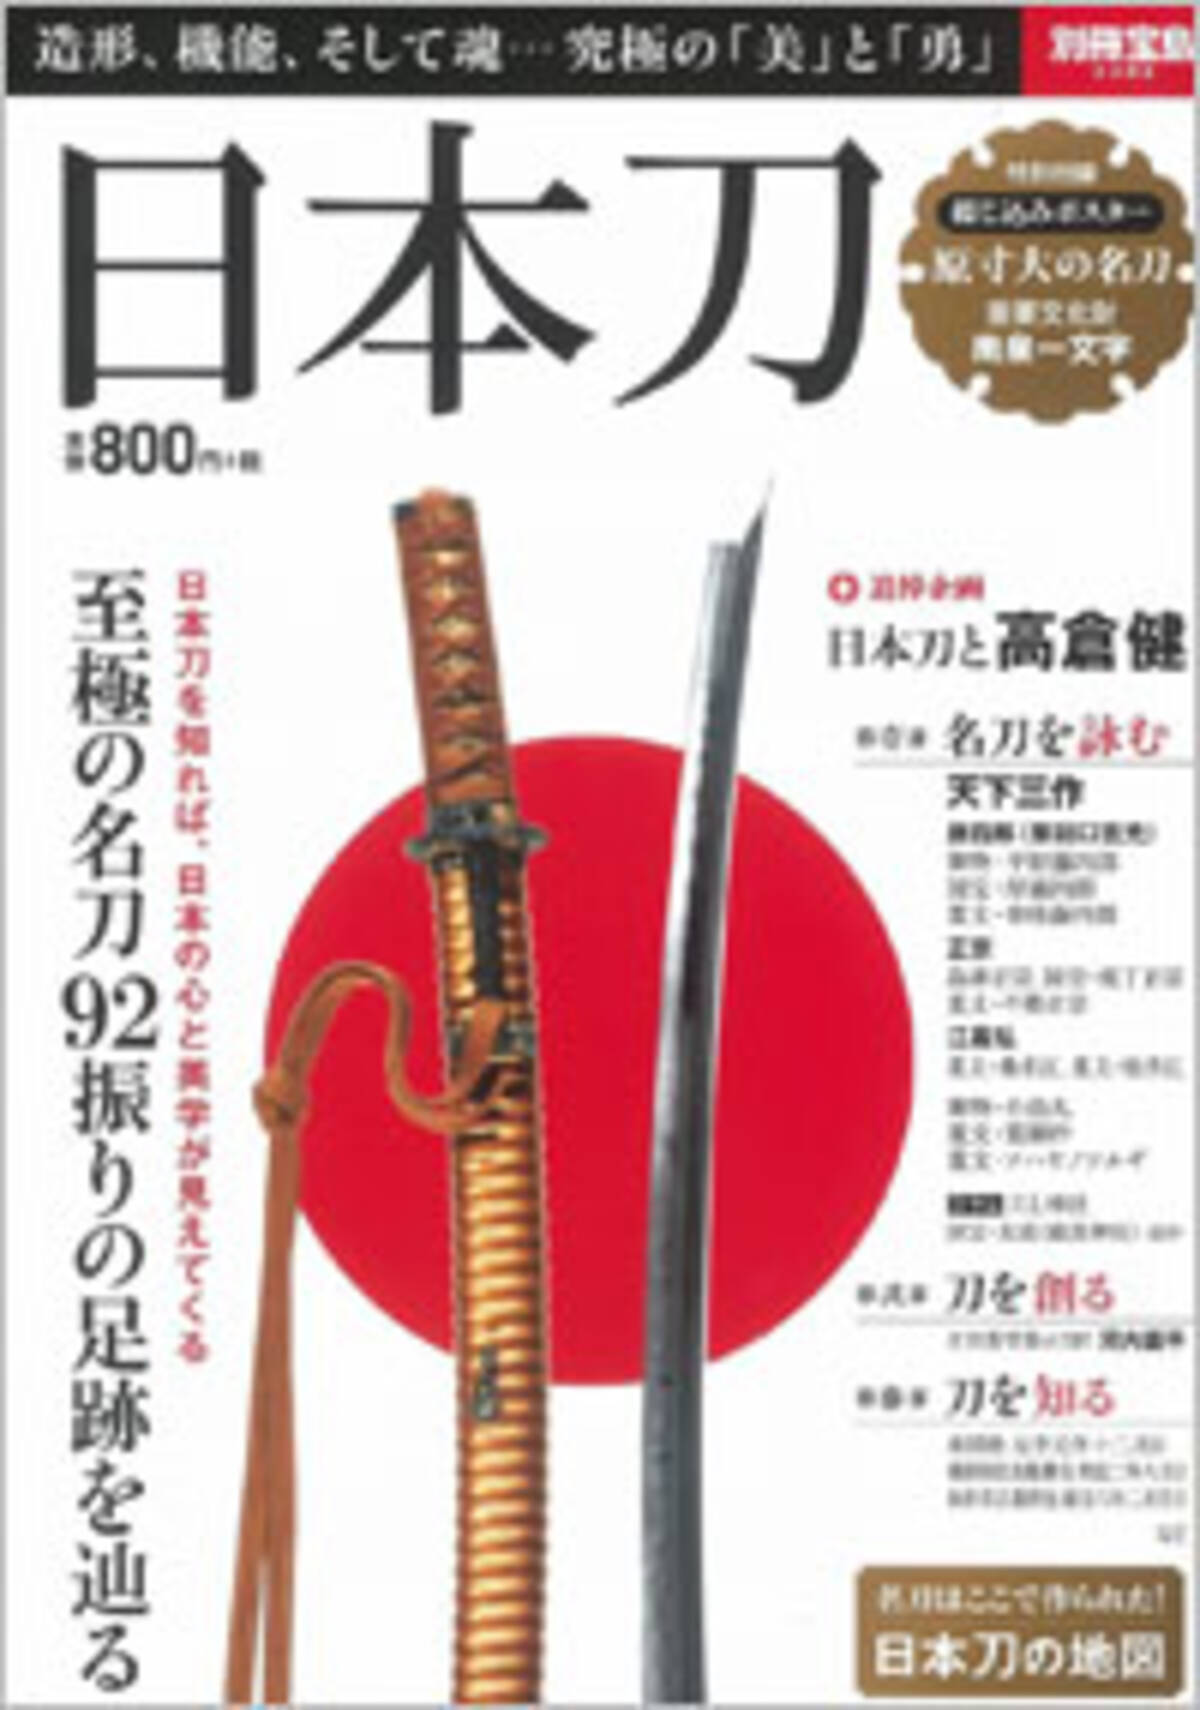 女子の刀剣萌え に騙されるな 日本刀ブームとネトウヨの根っこは同じだ 15年5月2日 エキサイトニュース